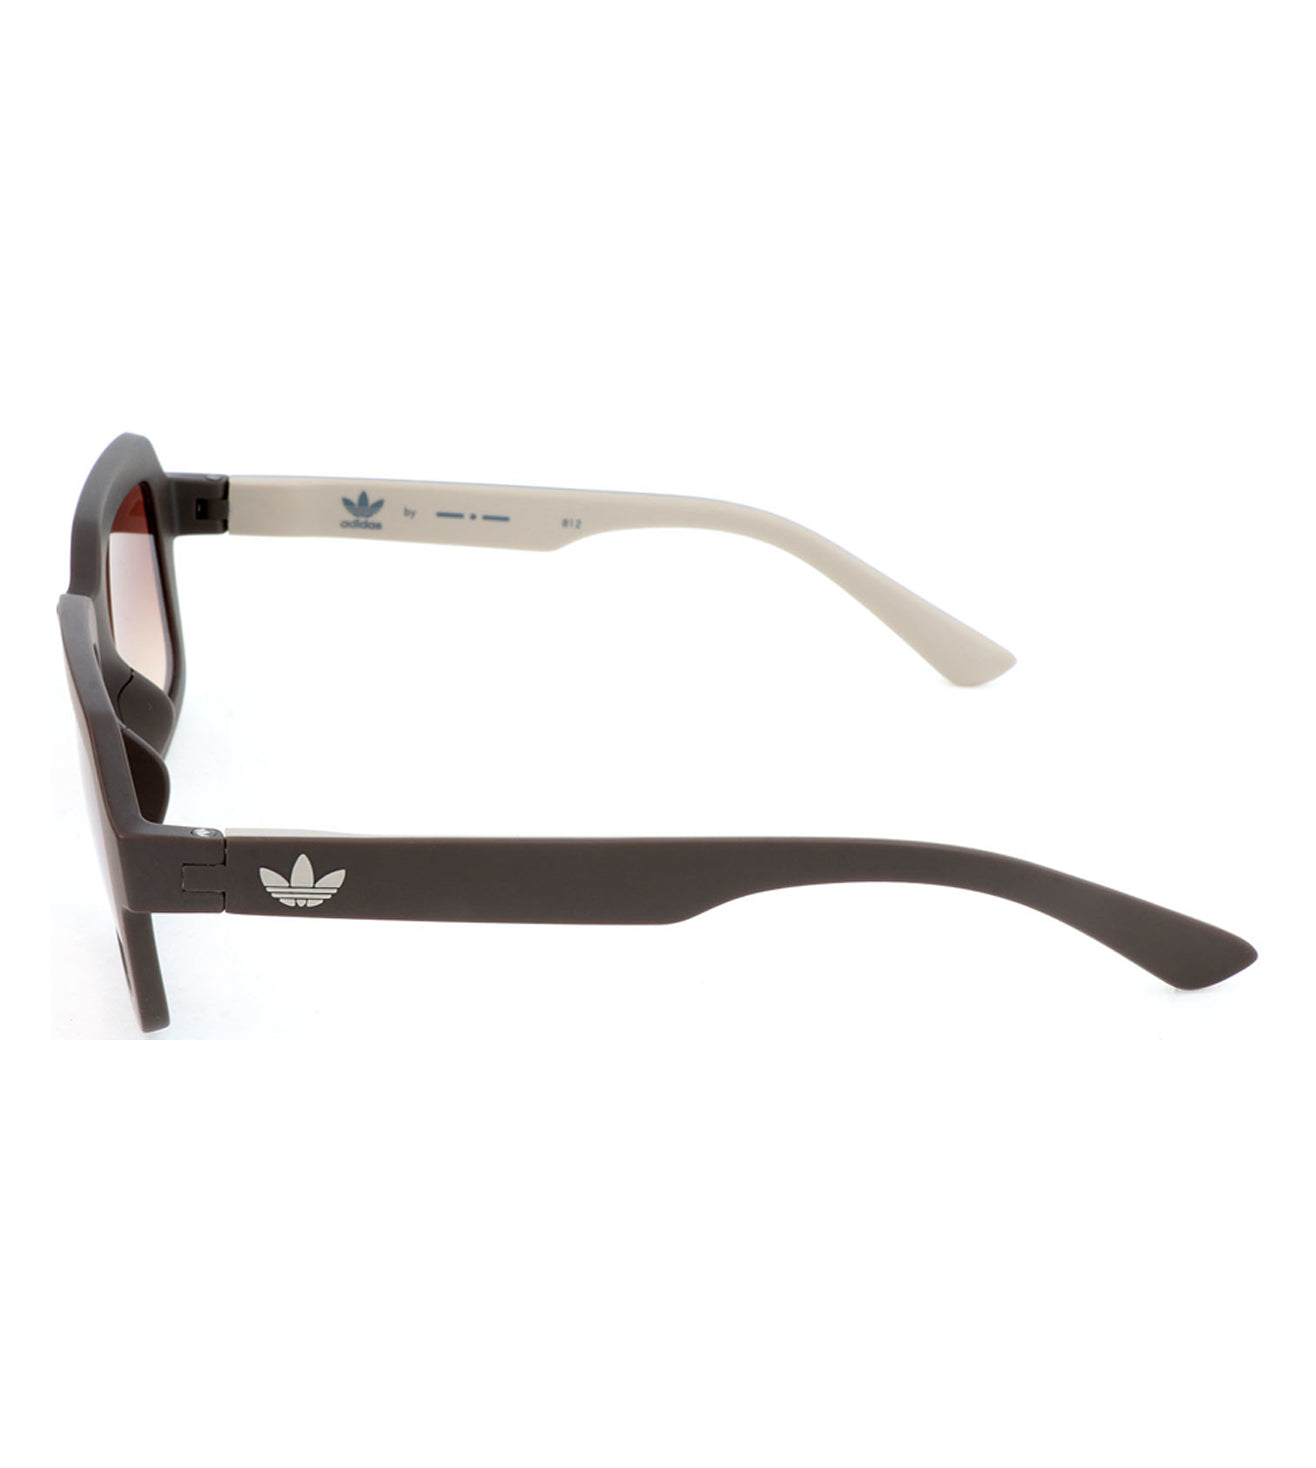 Adidas Originals Unisex Brown Square Sunglasses